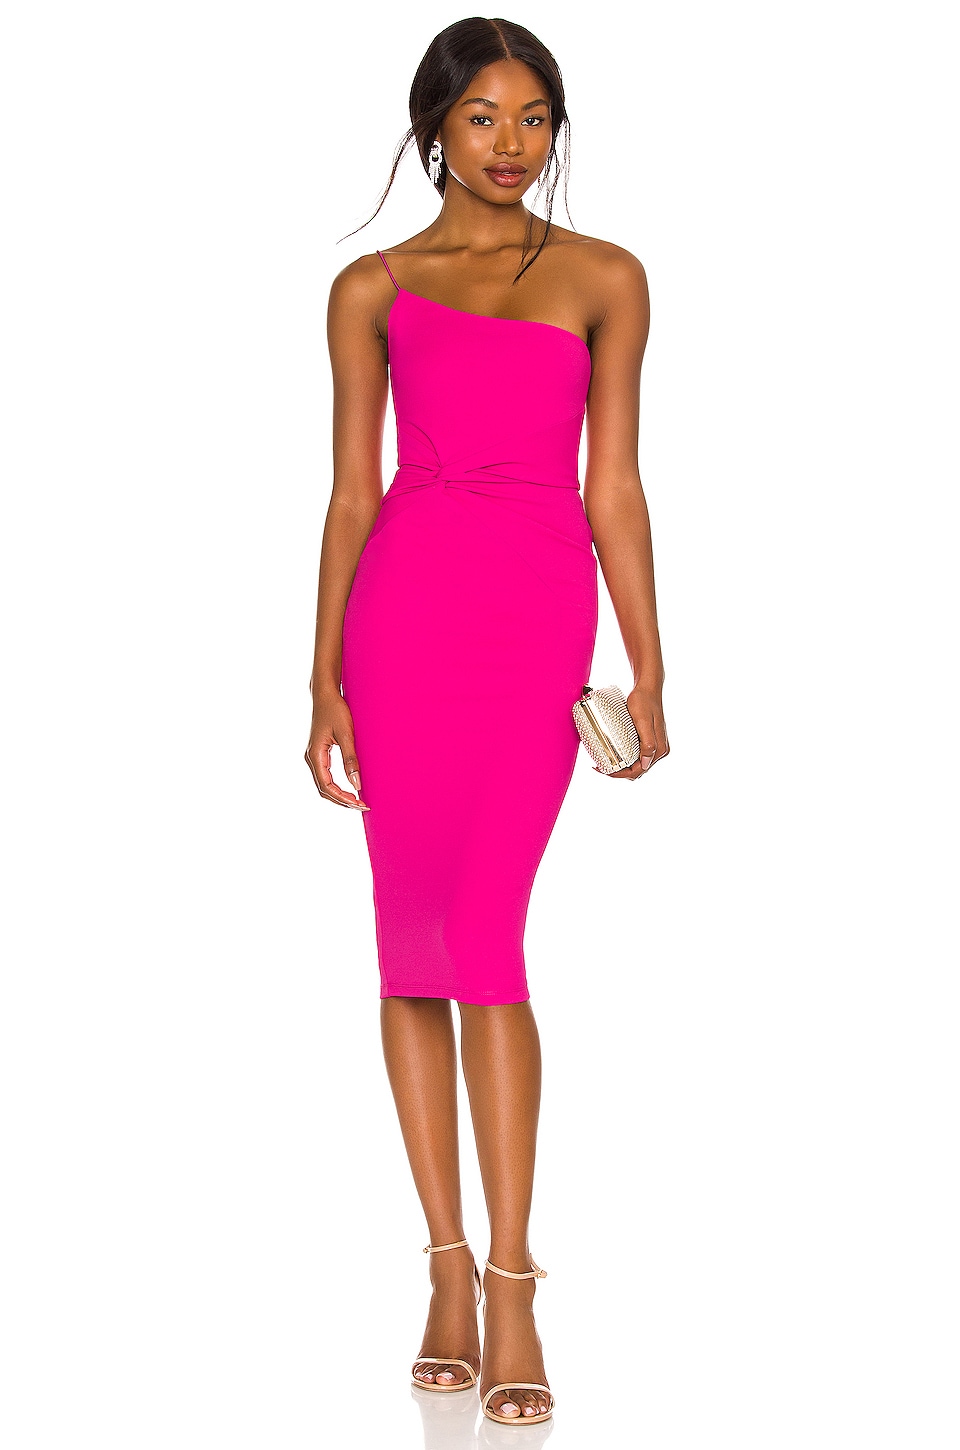 Casual Neon Pink Dress With Fur Detailing – Kulreeti®